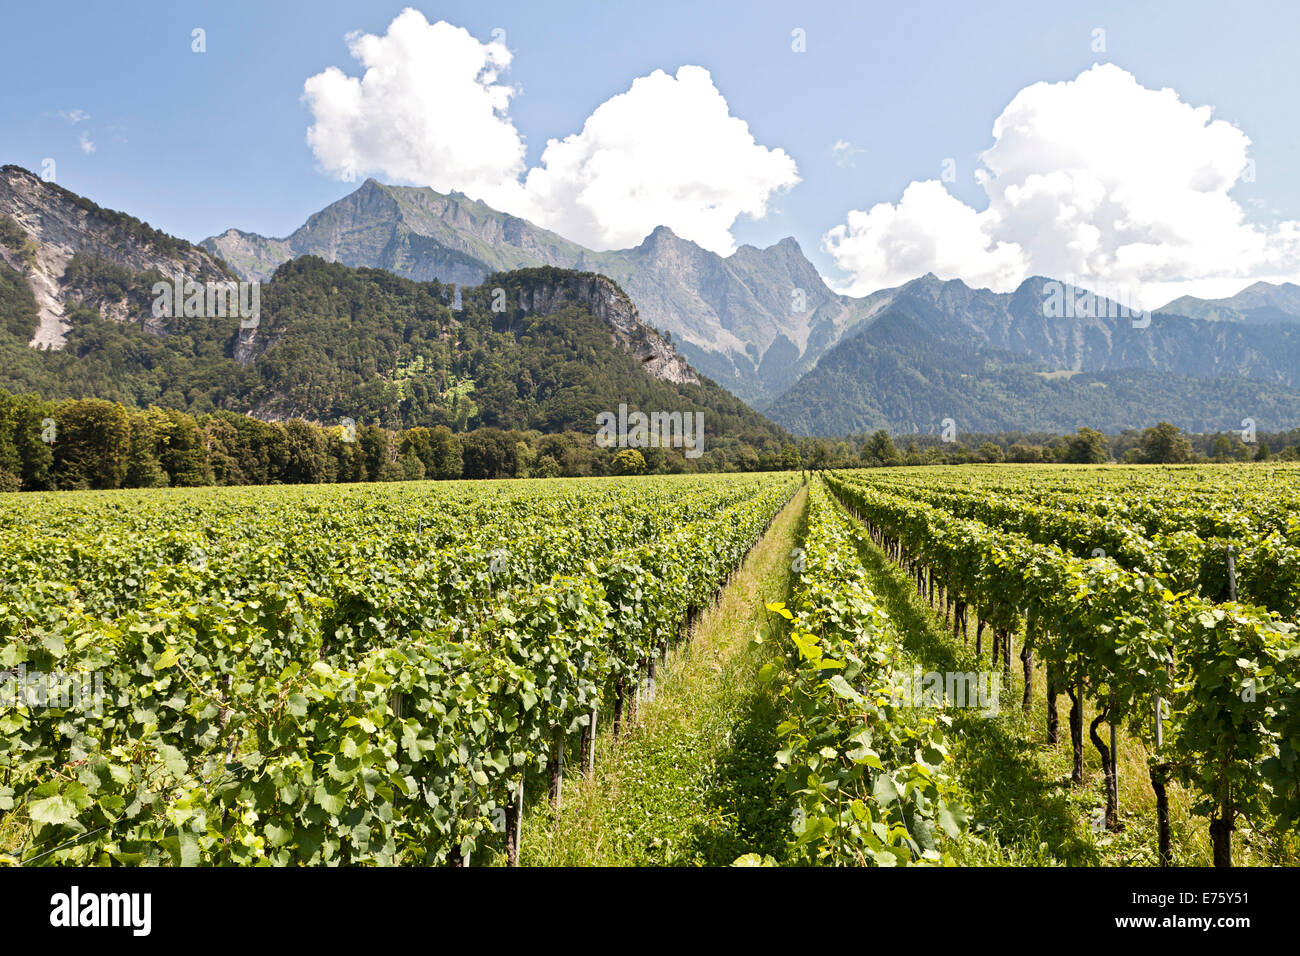 Vineyard, viticulture, mountains at the back, near Fläsch, Graubünden, Switzerland Stock Photo